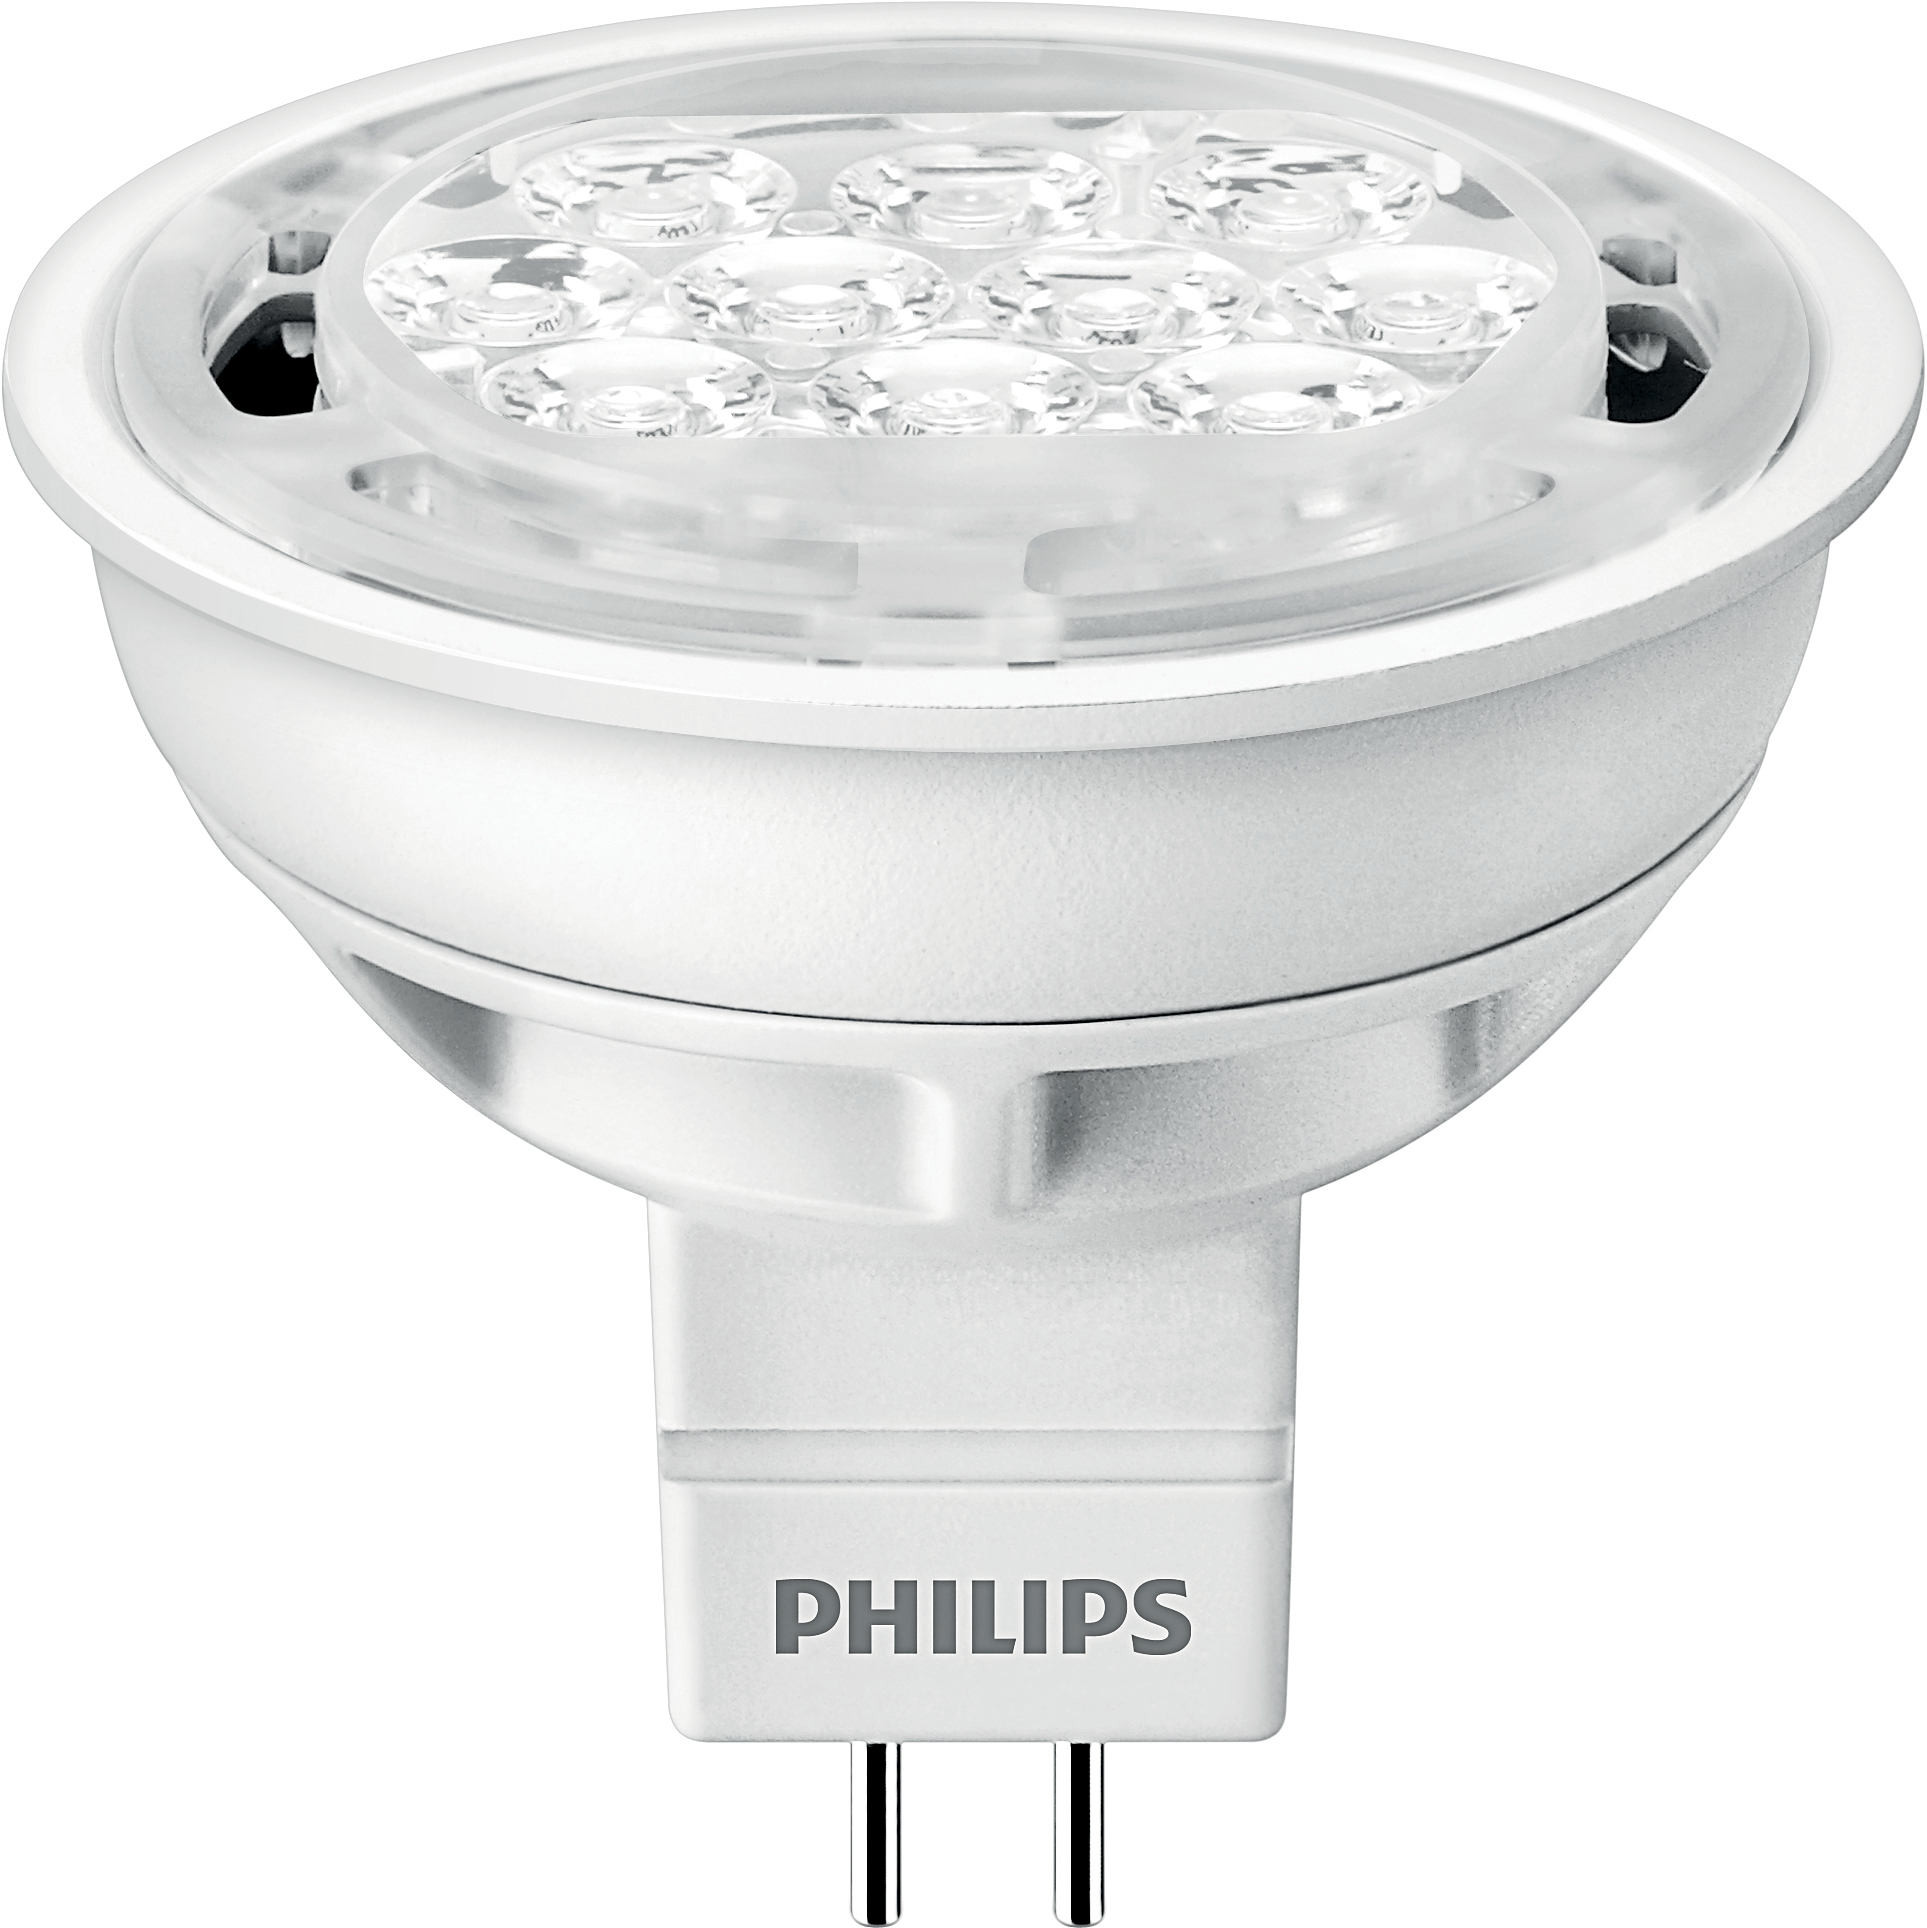 Светодиодные филипс купить. Светодиодная лампа Philips gu5.3 2700k 7w. Лампа светодиодная Philips Essential led 6500к, gu5.3, mr16, 4.5Вт. Philips Essential led gu 5. Лампа светодиодная Philips led 2700k, gu5.3, mr16, 5вт.